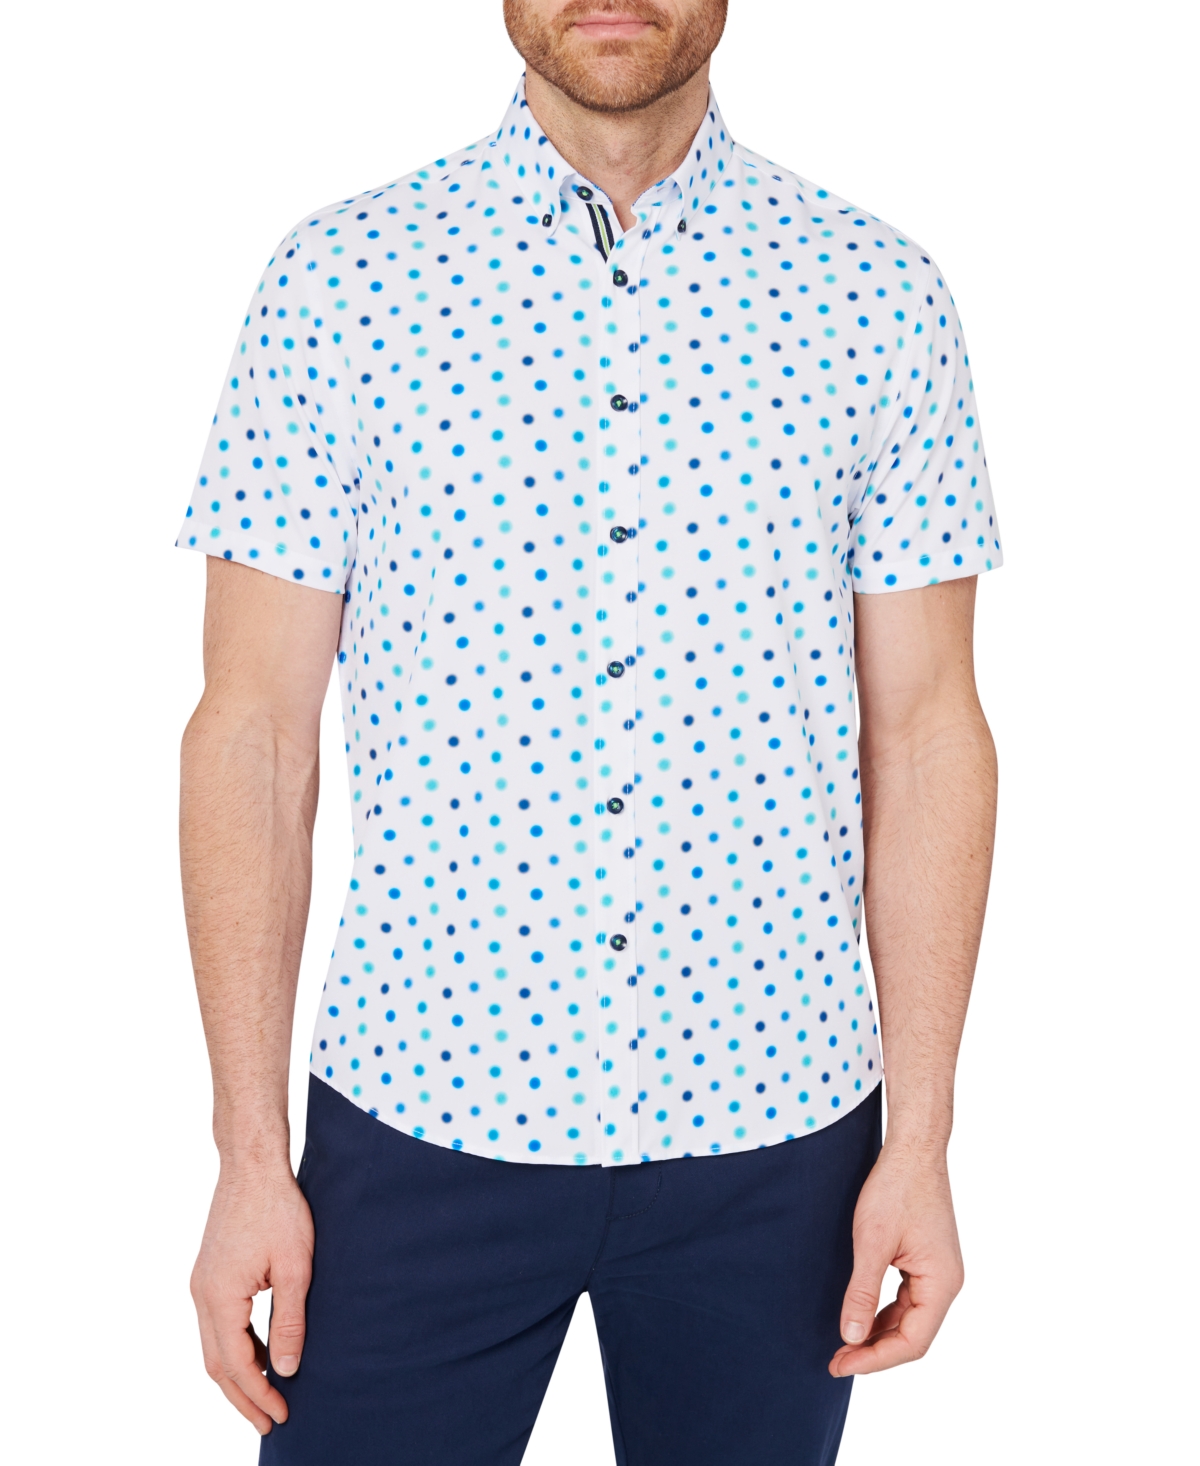 Men's Slim-Fit Dot Print Button-Down Performance Shirt - White